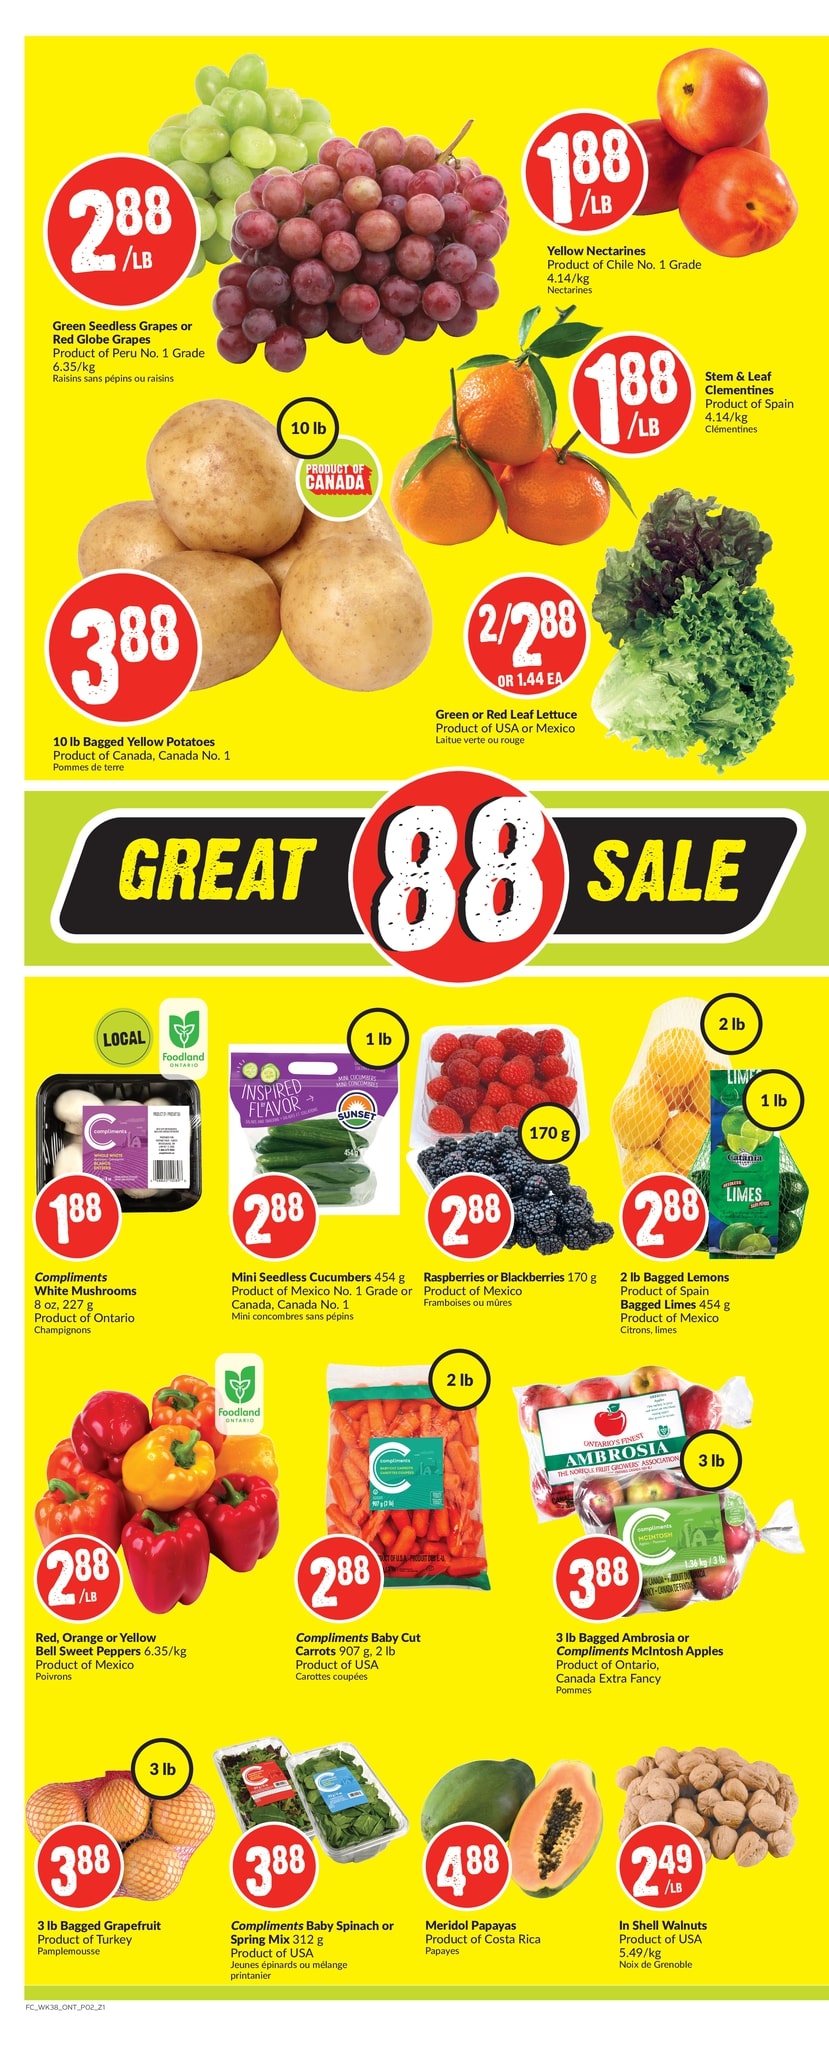 FreshCo Ontario - Weekly Flyer Specials - Page 3